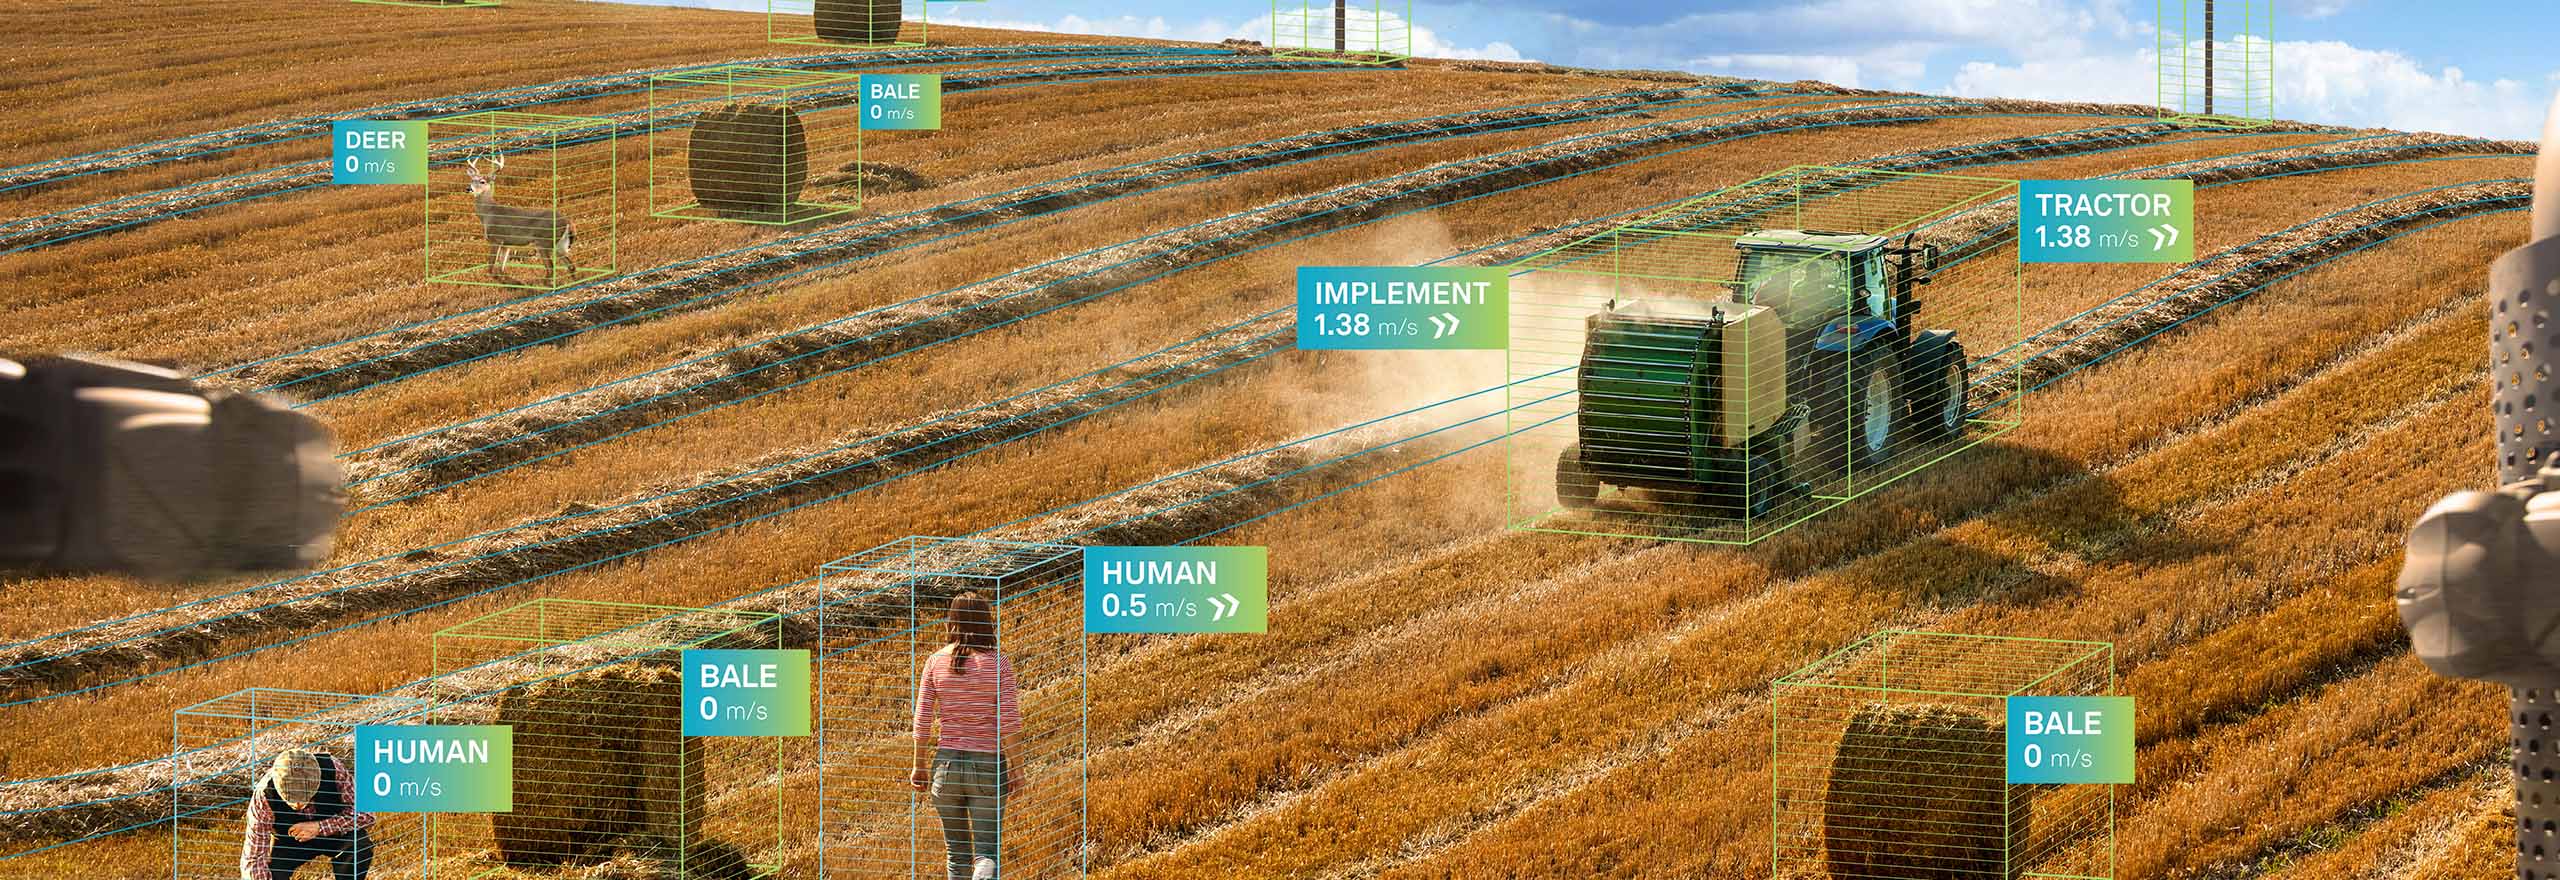 Tractor autónomo de Hexagon trabajando en el campo en un entorno agrícola inteligente